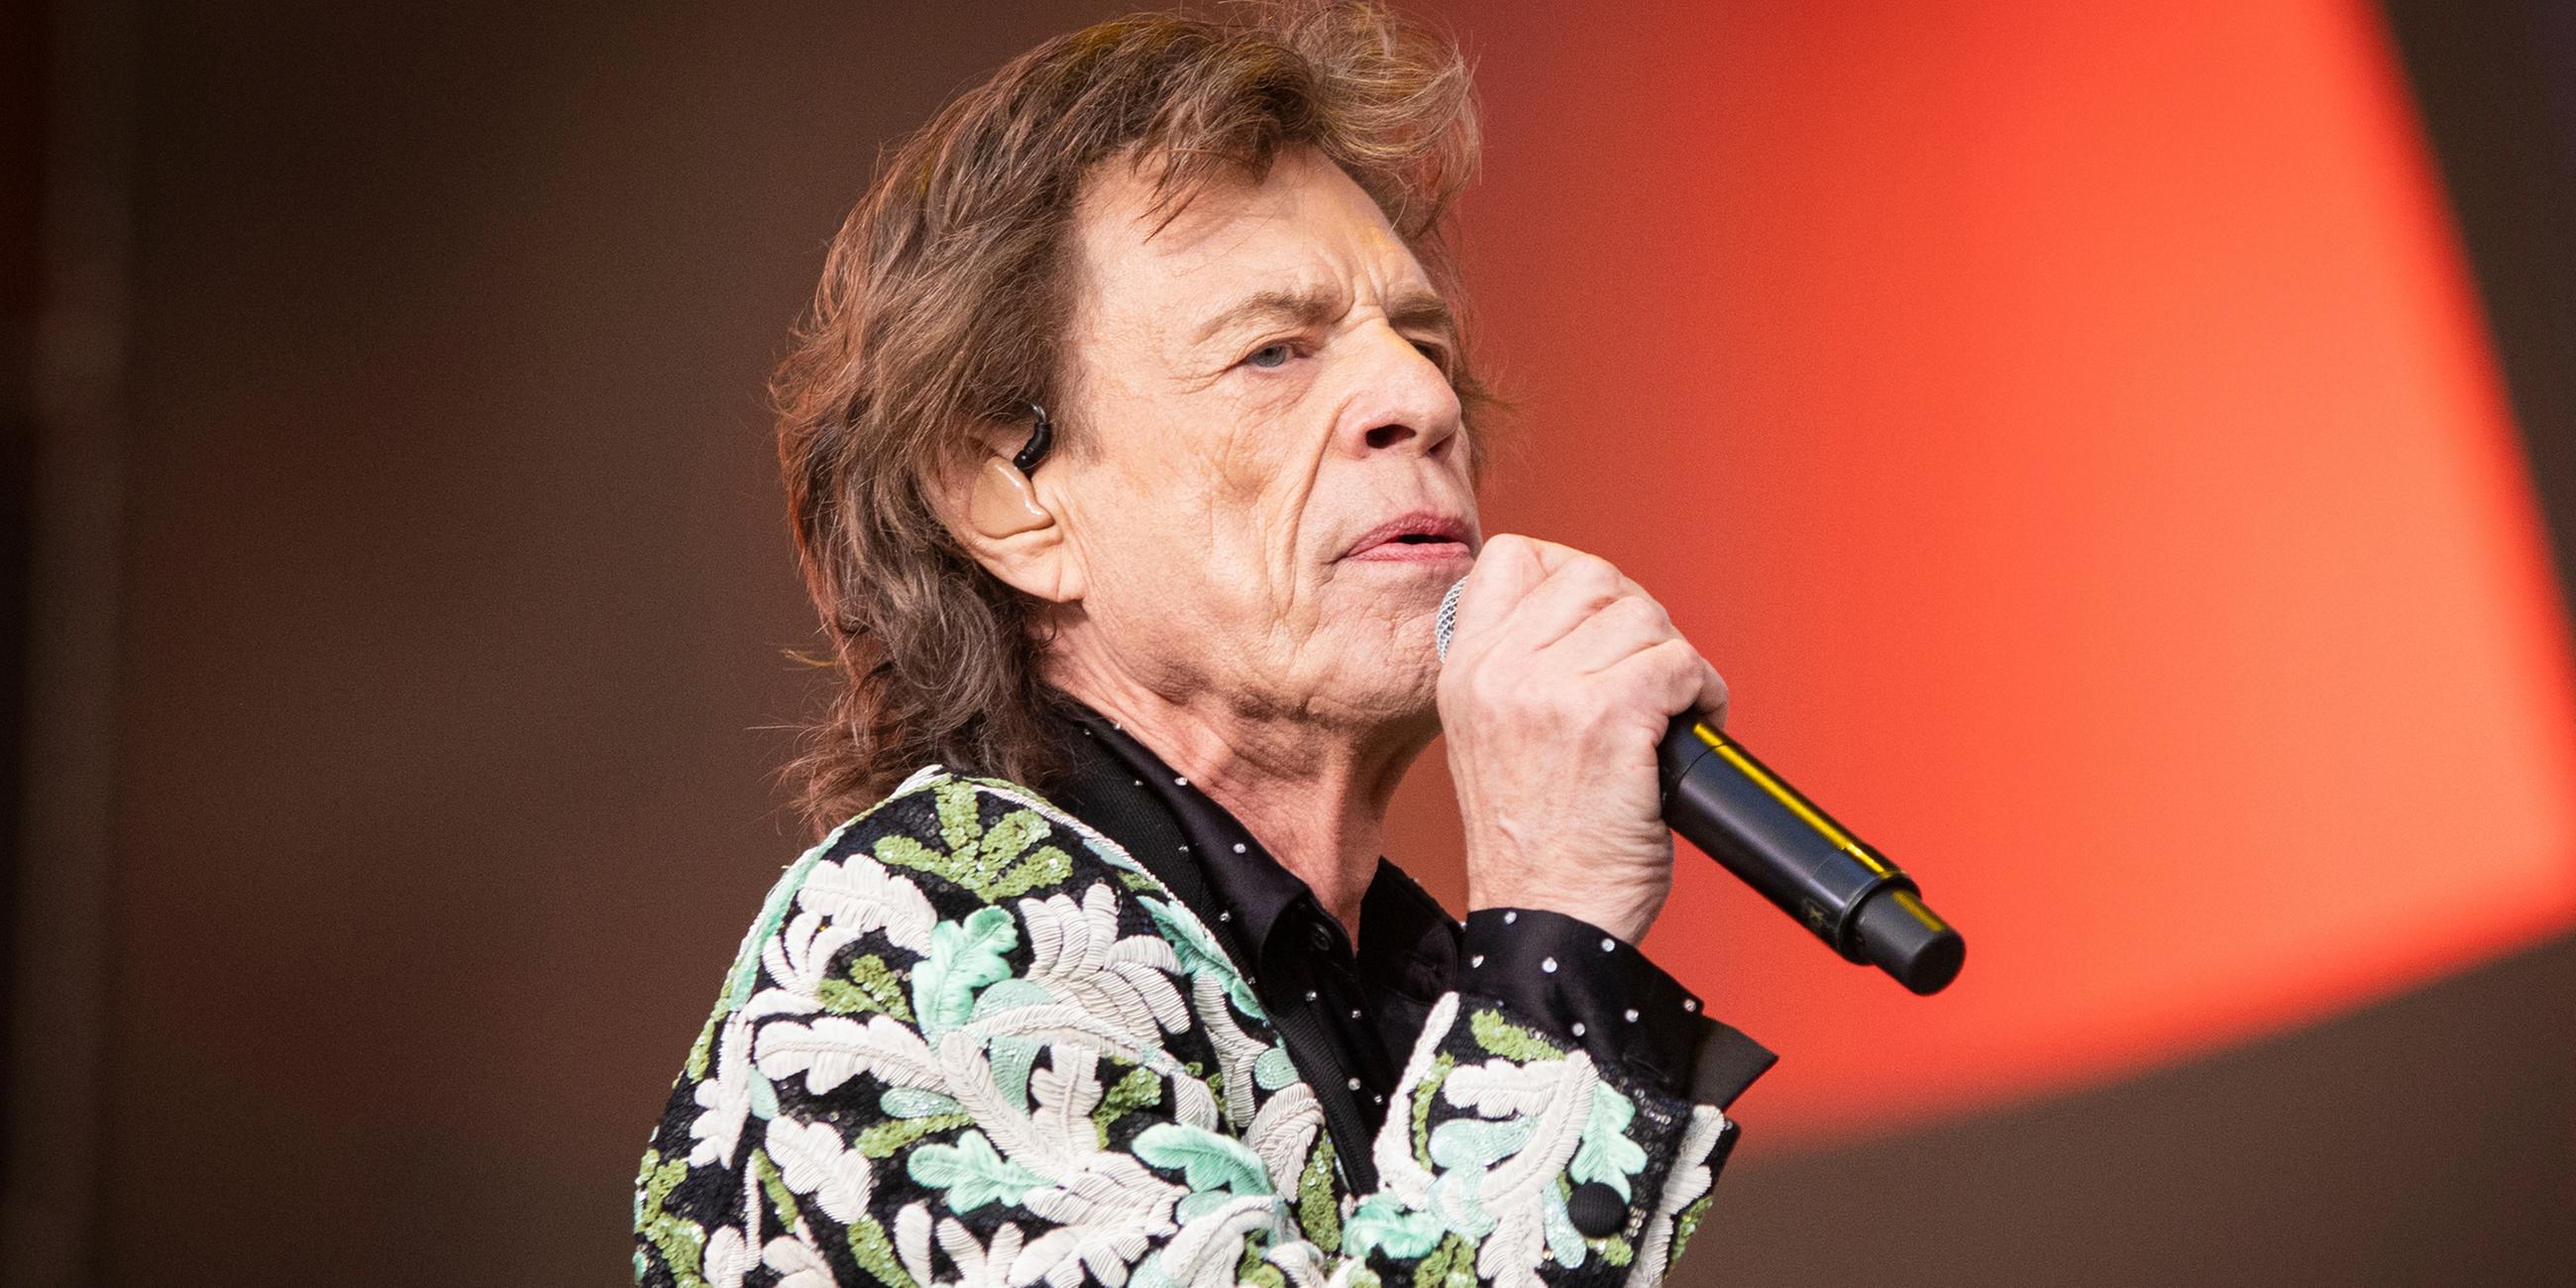 Archiv: Mick Jagger steht bei einem Auftritt während des British Summer Time Festivals in London auf der Bühne. (25.06.2022)